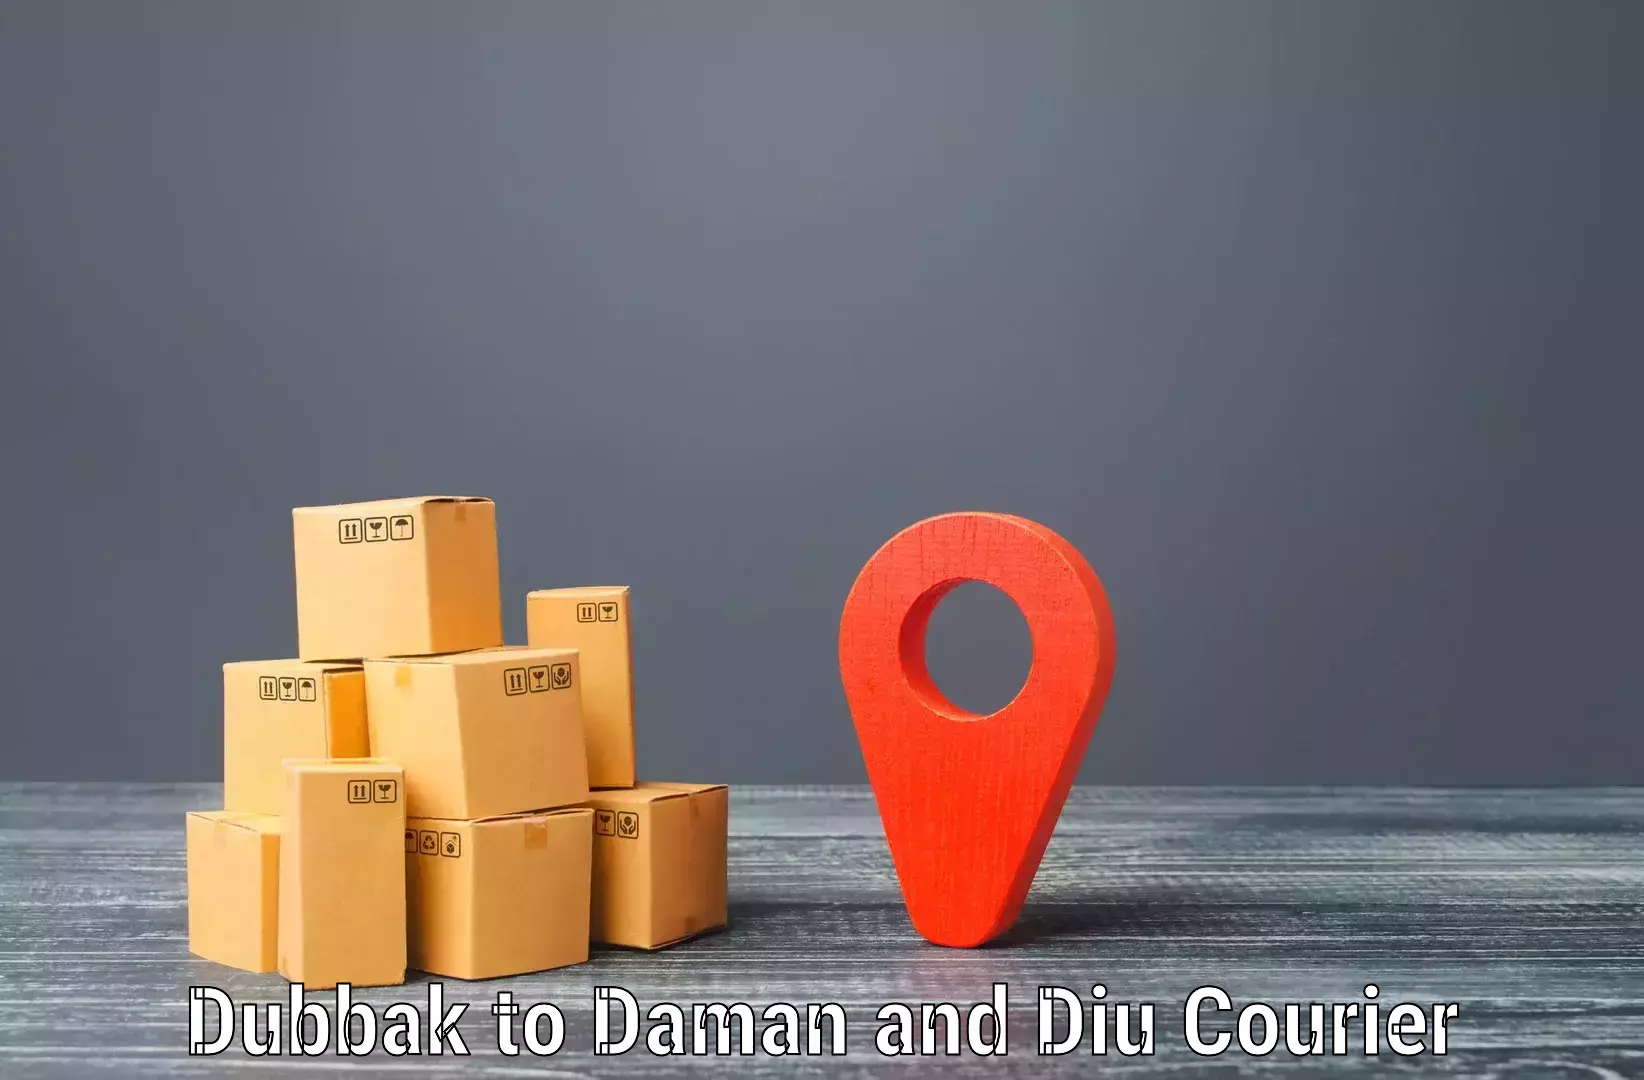 Express courier capabilities Dubbak to Daman